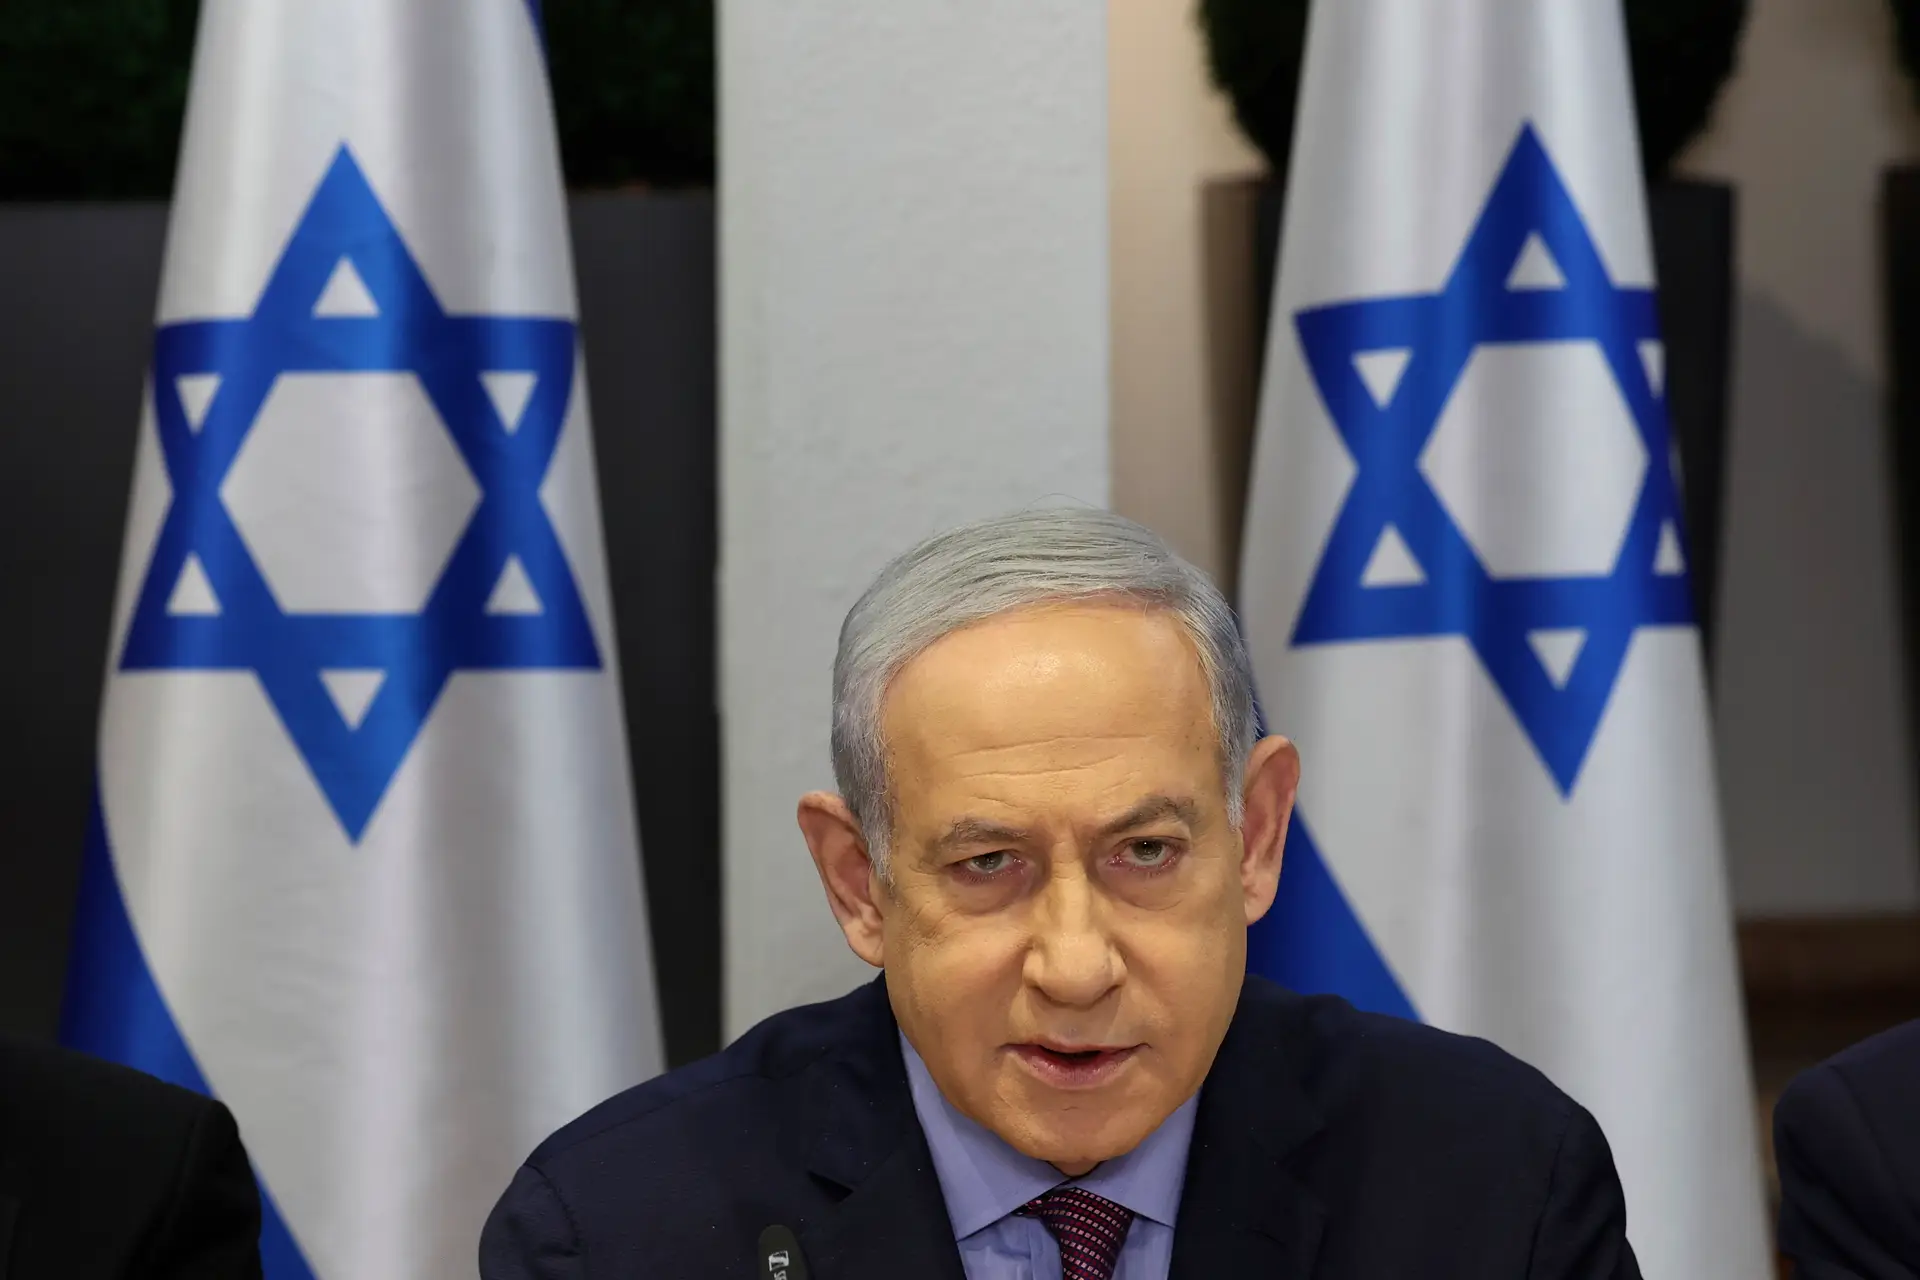 Acusação de genocídio: Israel fará "o que for necessário" para se defender, diz Netanyahu